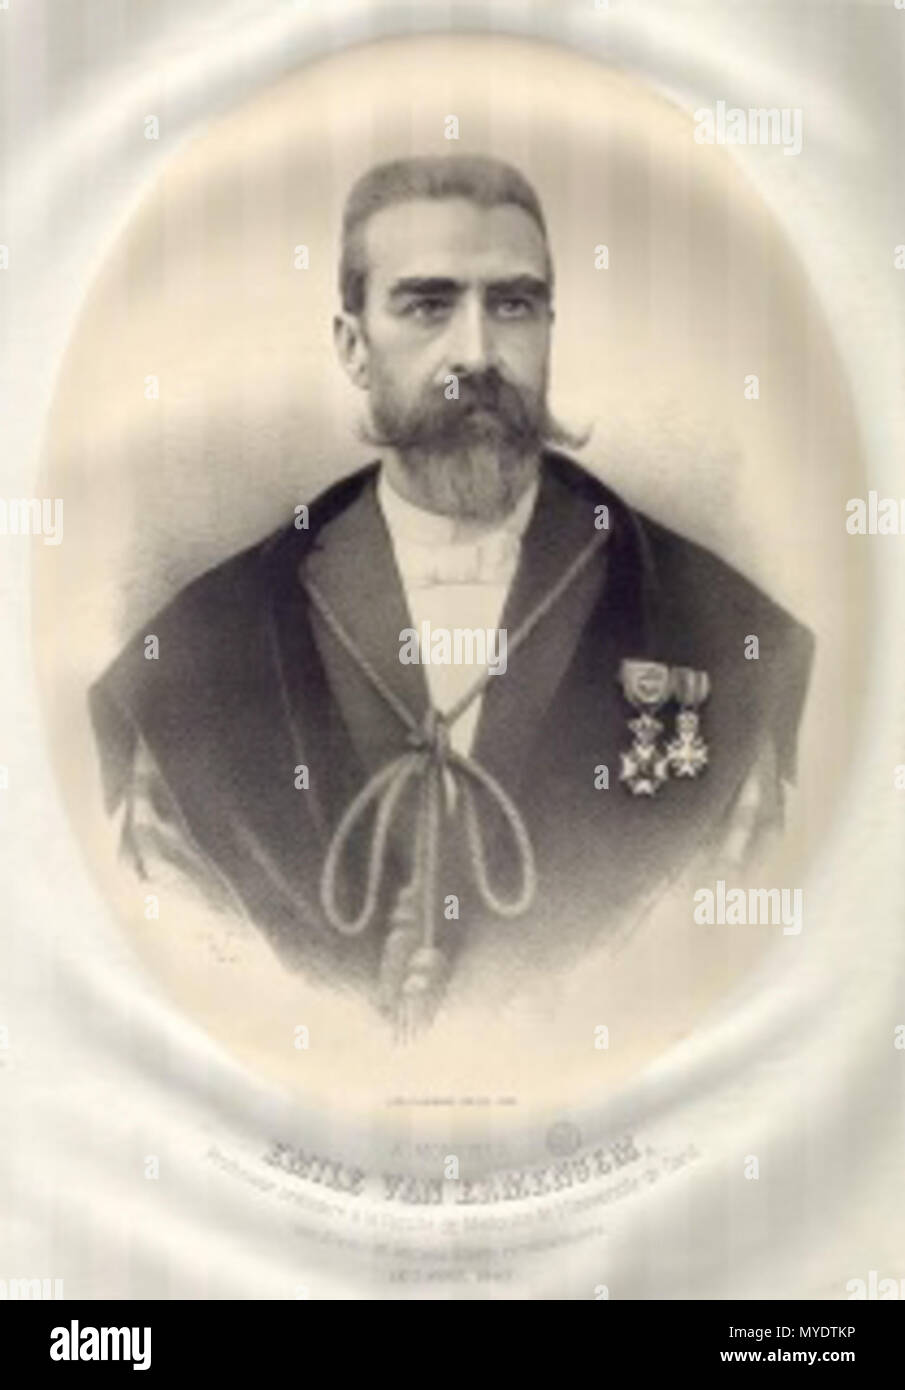 . Inglese: Émile van Ermengem (1851-1932), bacteriologist belga . 1897. Florimond Van Loo (1823 -?) 166 Ermengem Foto Stock